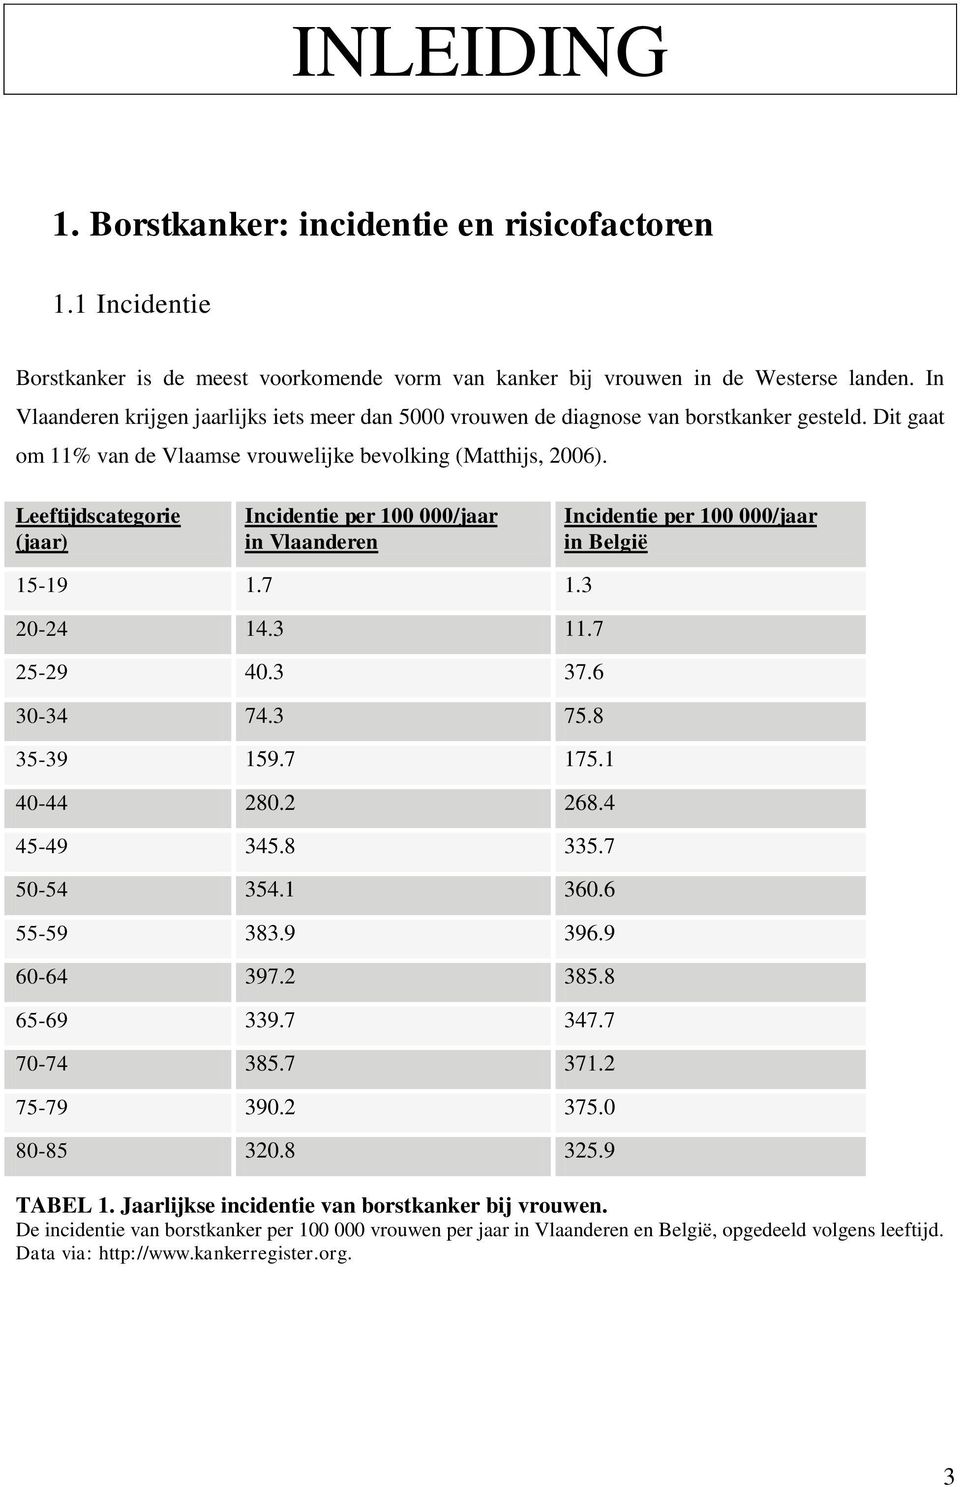 Leeftijdscategorie (jaar) Incidentie per 100 000/jaar in Vlaanderen Incidentie per 100 000/jaar in België 15-19 1.7 1.3 20-24 14.3 11.7 25-29 40.3 37.6 30-34 74.3 75.8 35-39 159.7 175.1 40-44 280.